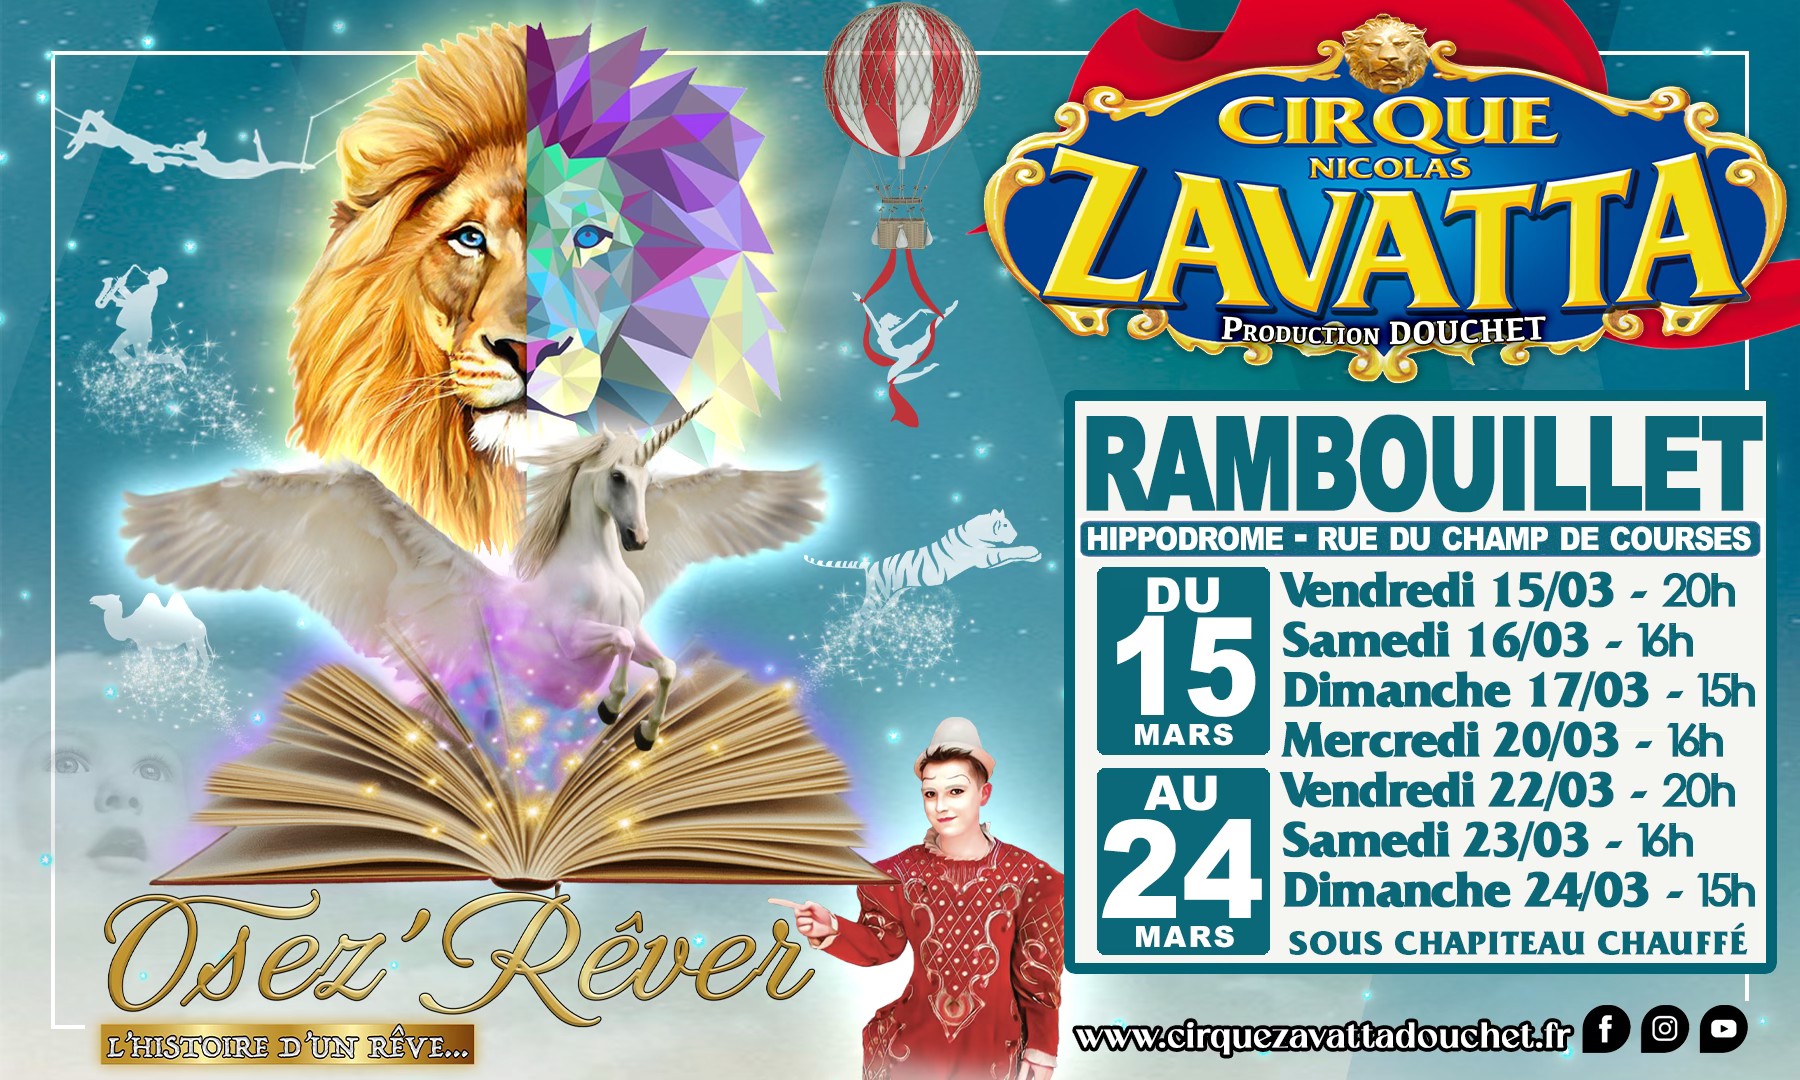 Zavatta douchet circus - VVV-kantoor van Rambouillet